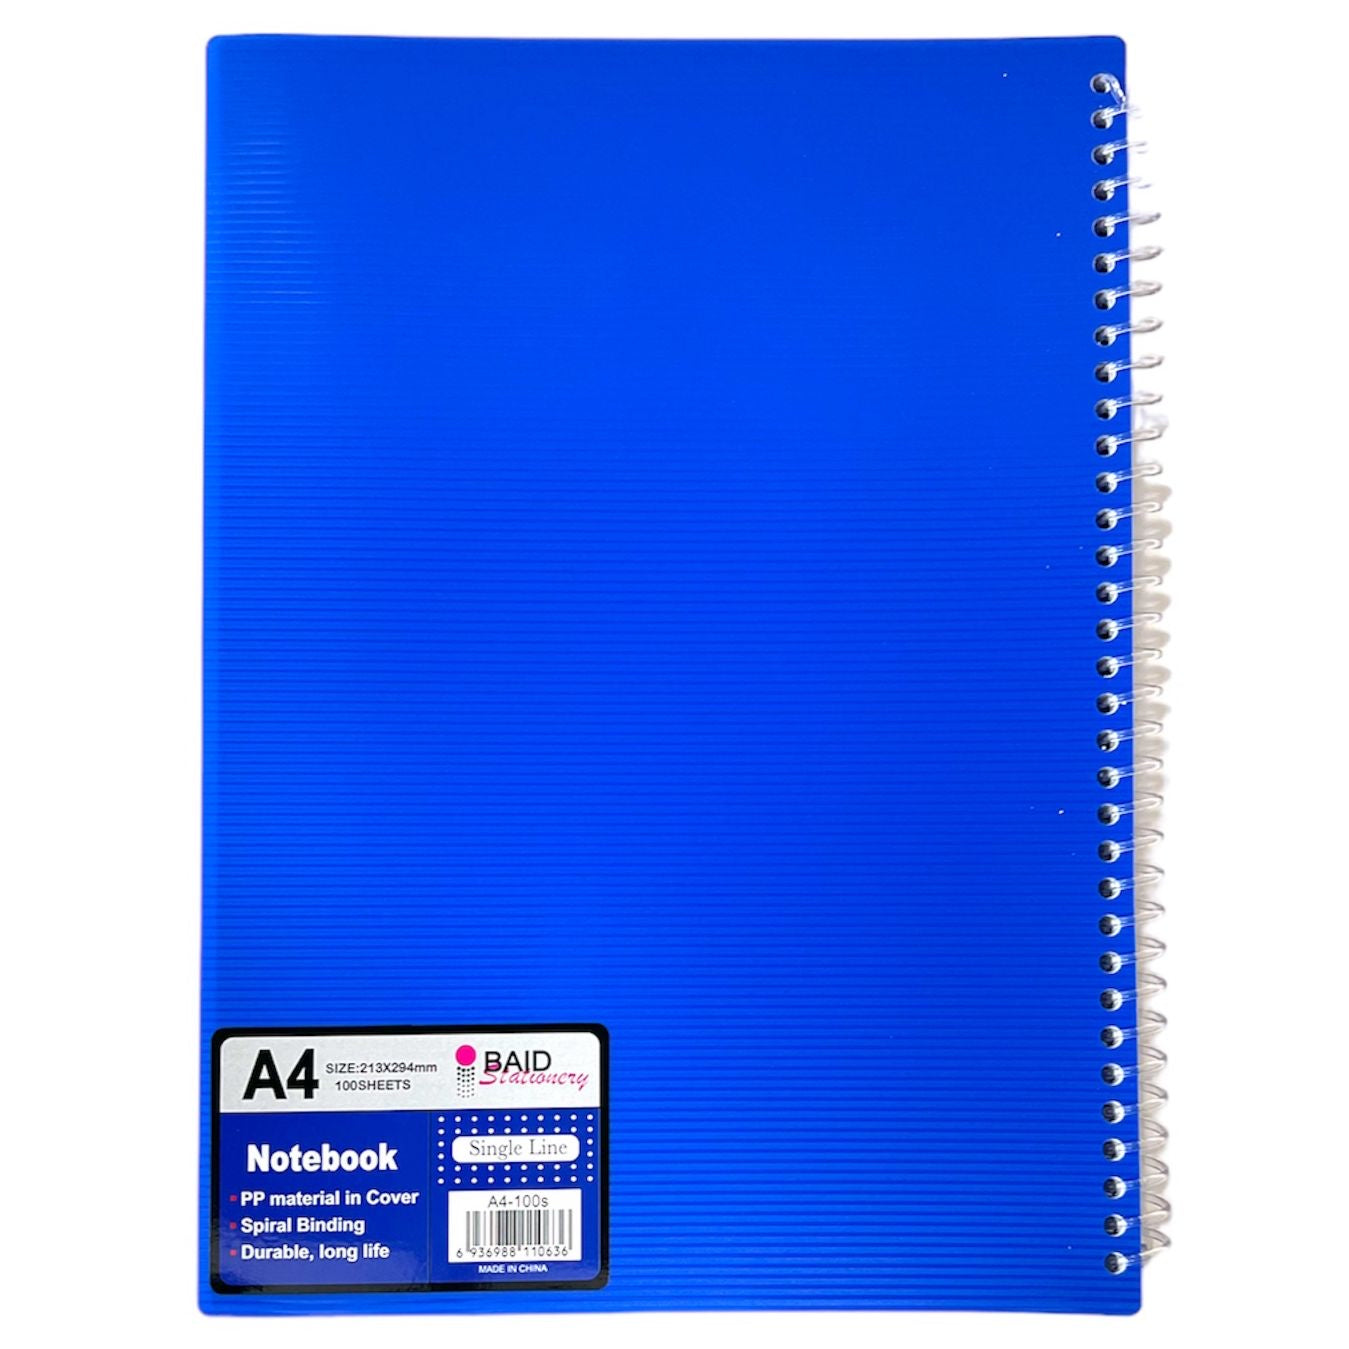 A4 Notebook 100 Sheets || دفتر سلك ١٠٠ ورقة حجم اي فور